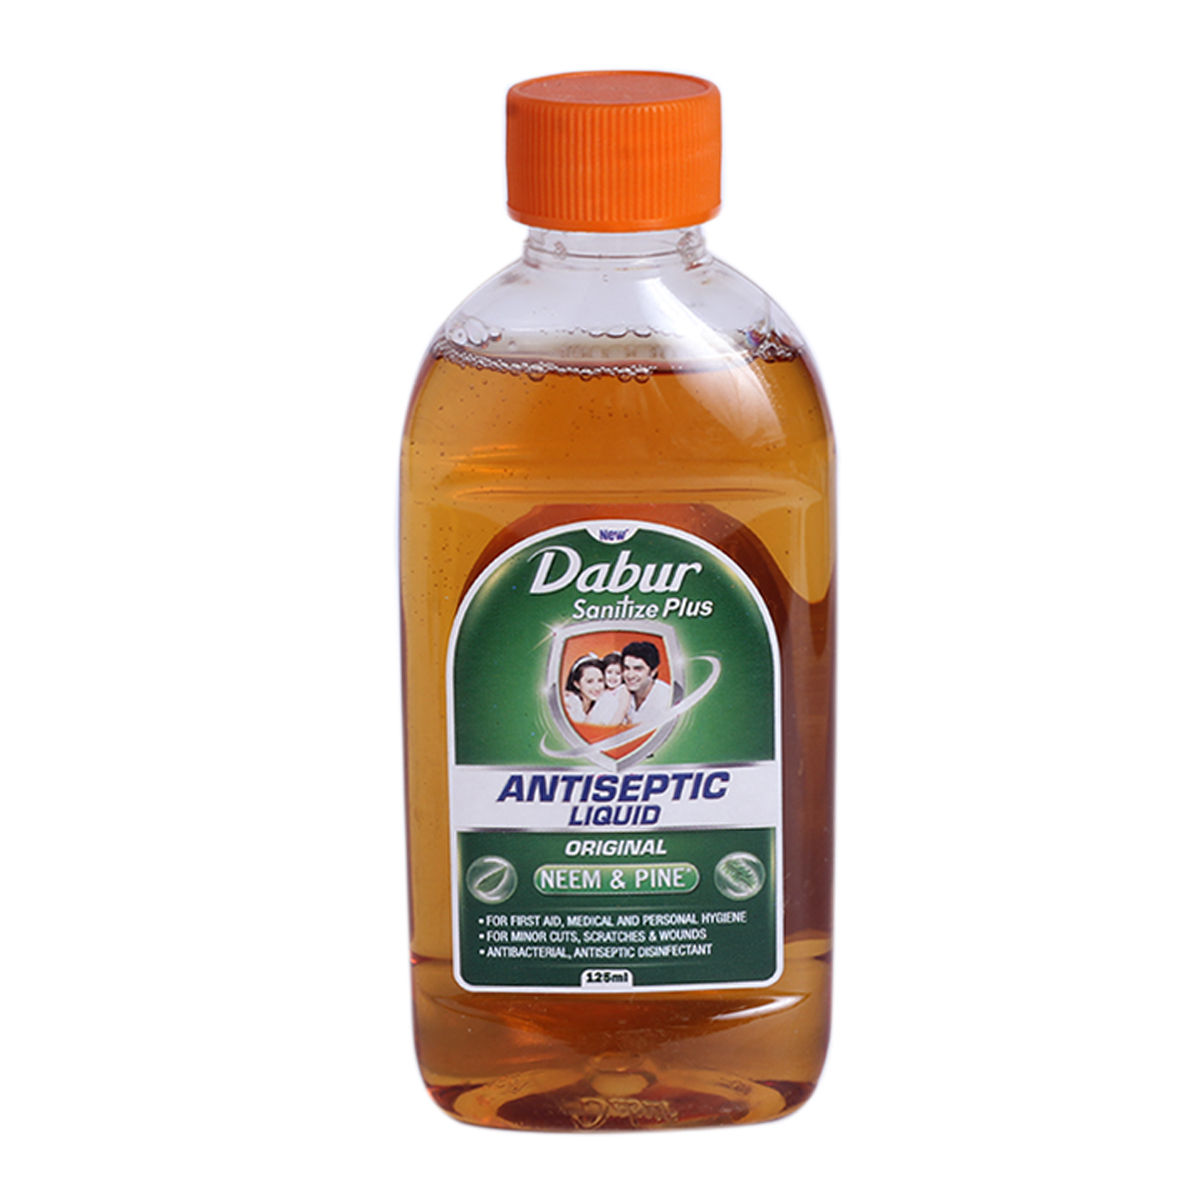 Dabur Sanitize Plus Antiseptic Liquid, 125 ml, Pack of 1 